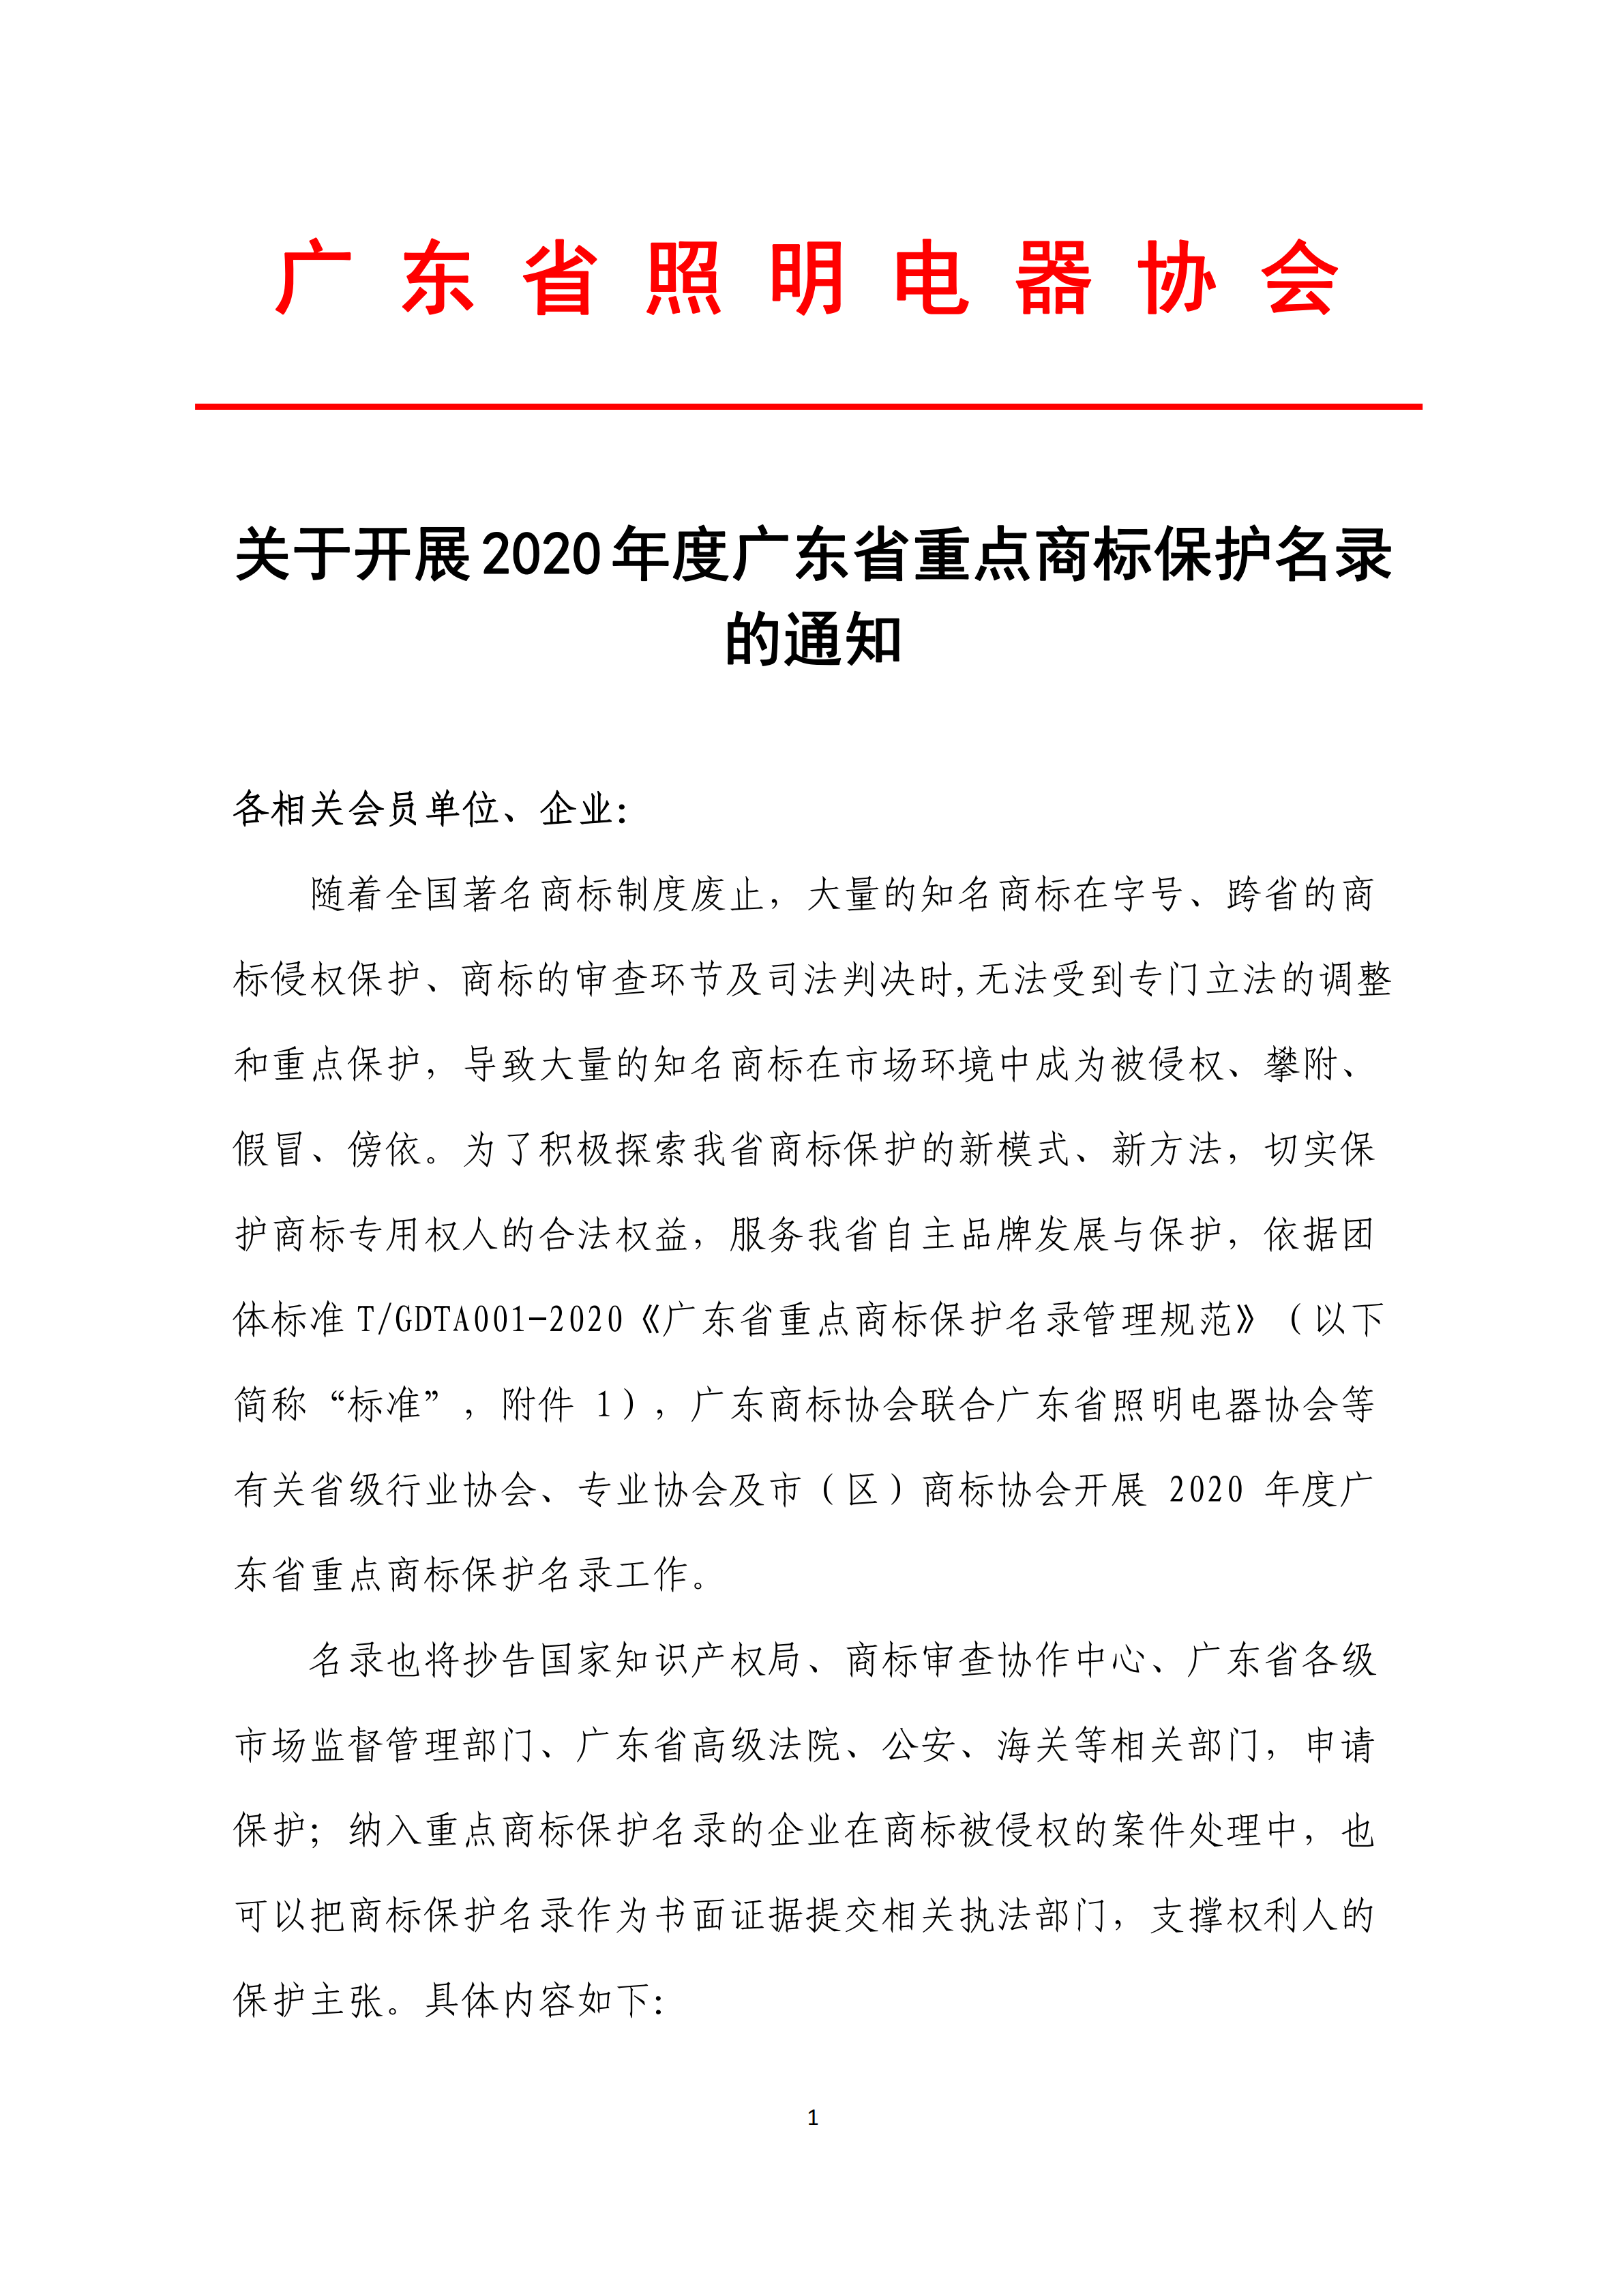 关于开展2020年度广东省重点商标保护名录的通知_00.png